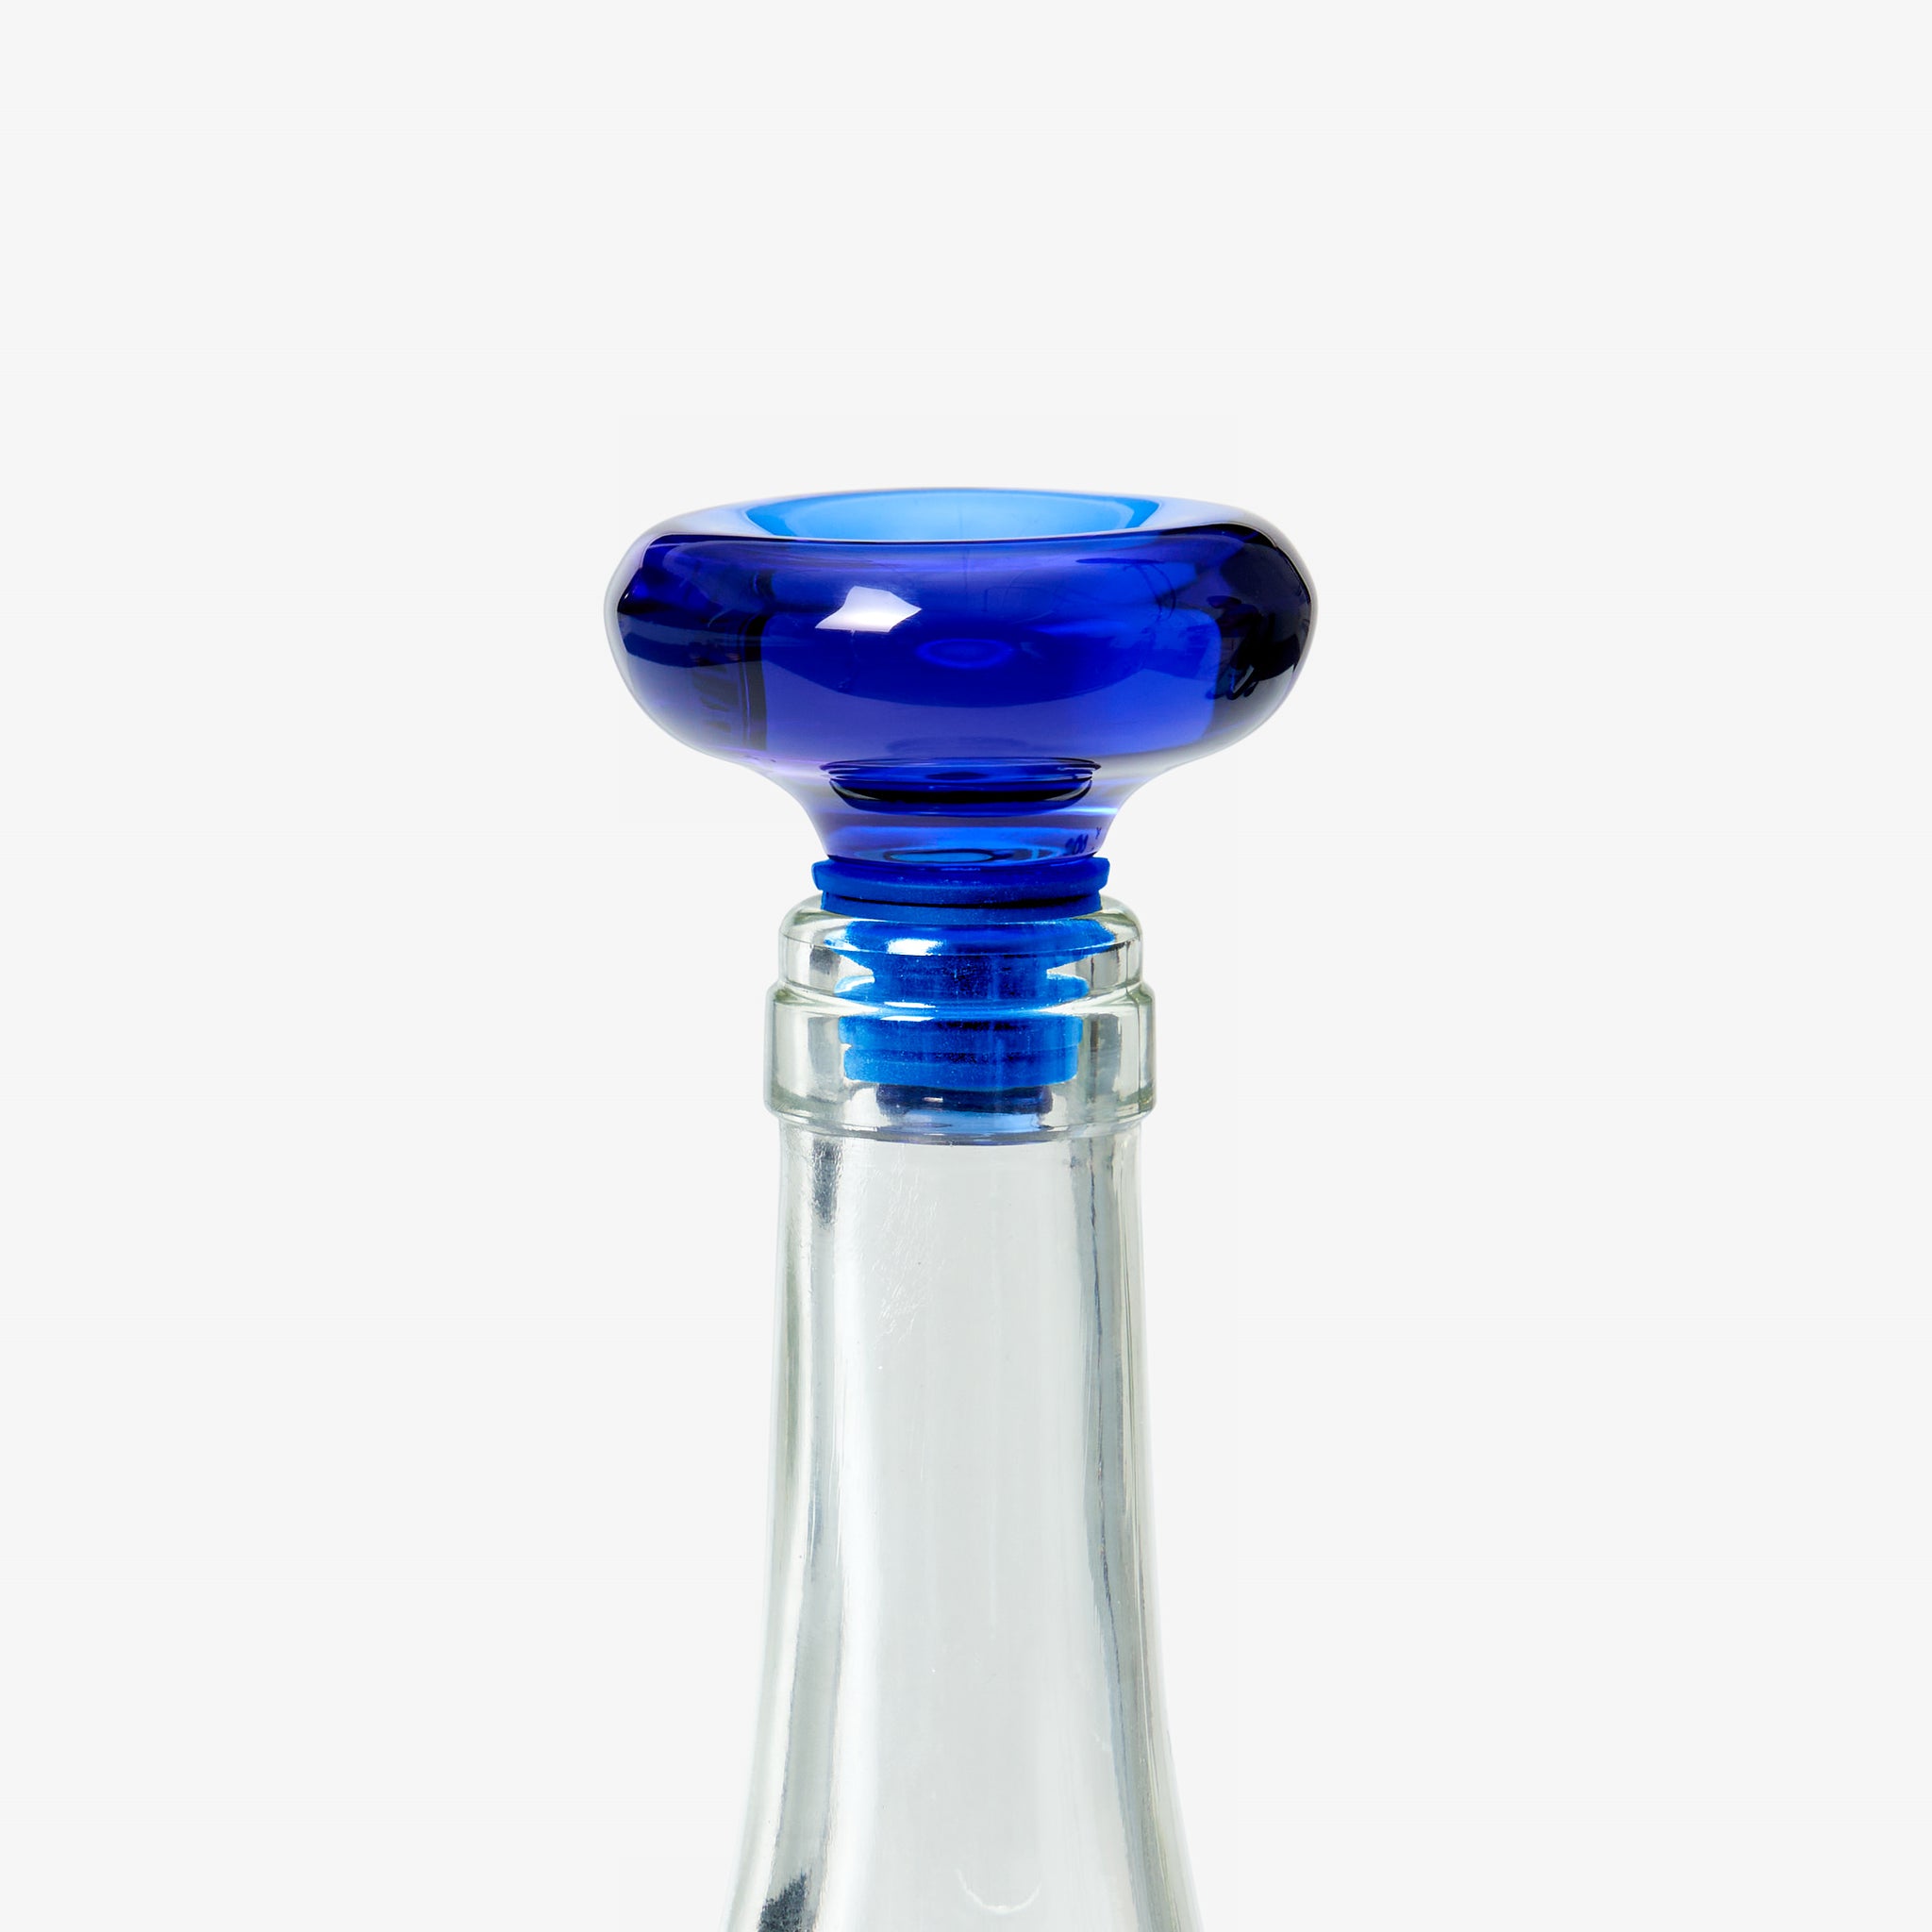 Hobknob Bottle Stopper